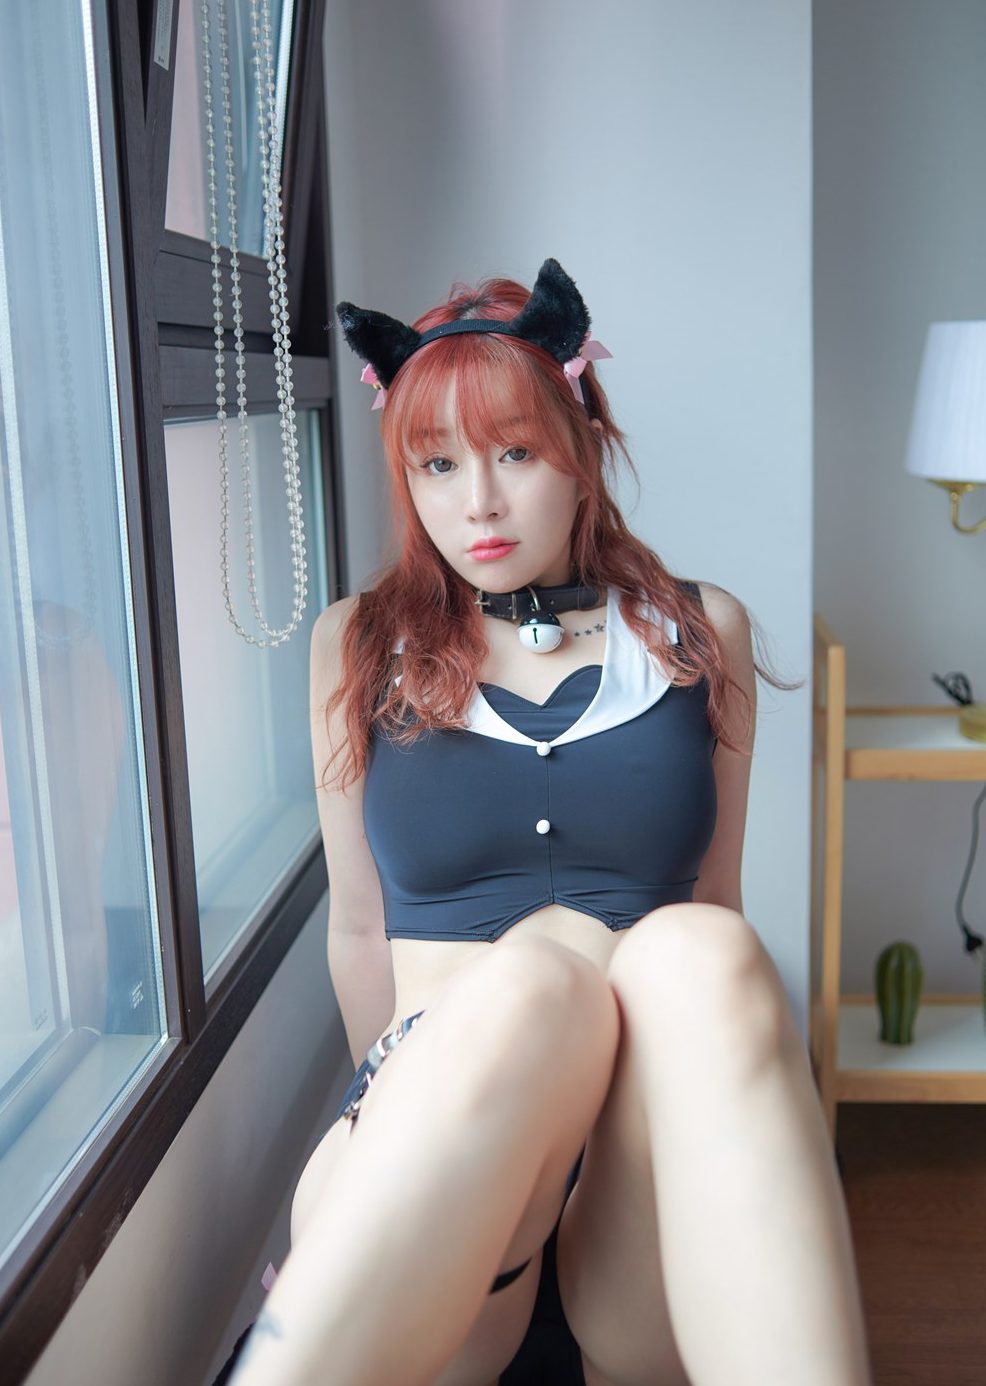 wang yu chun hot girl in cosplay costume, xxx photos role playing sex 